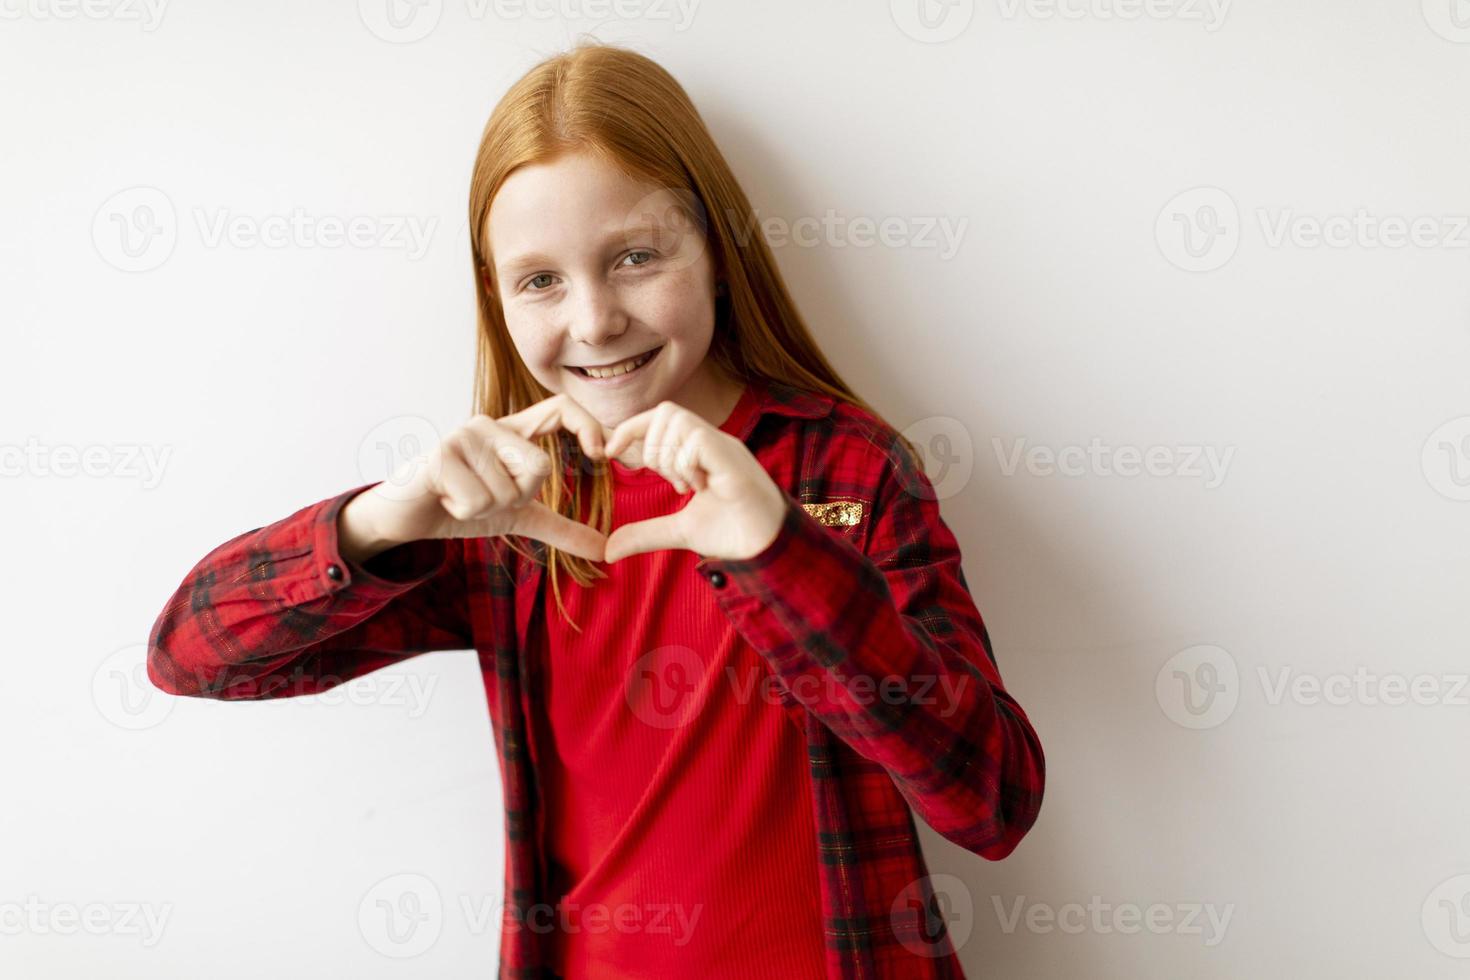 süßes kleines Mädchen mit roten Haaren, das an der weißen Wand steht und Herzform mit den Fingern zeigt foto